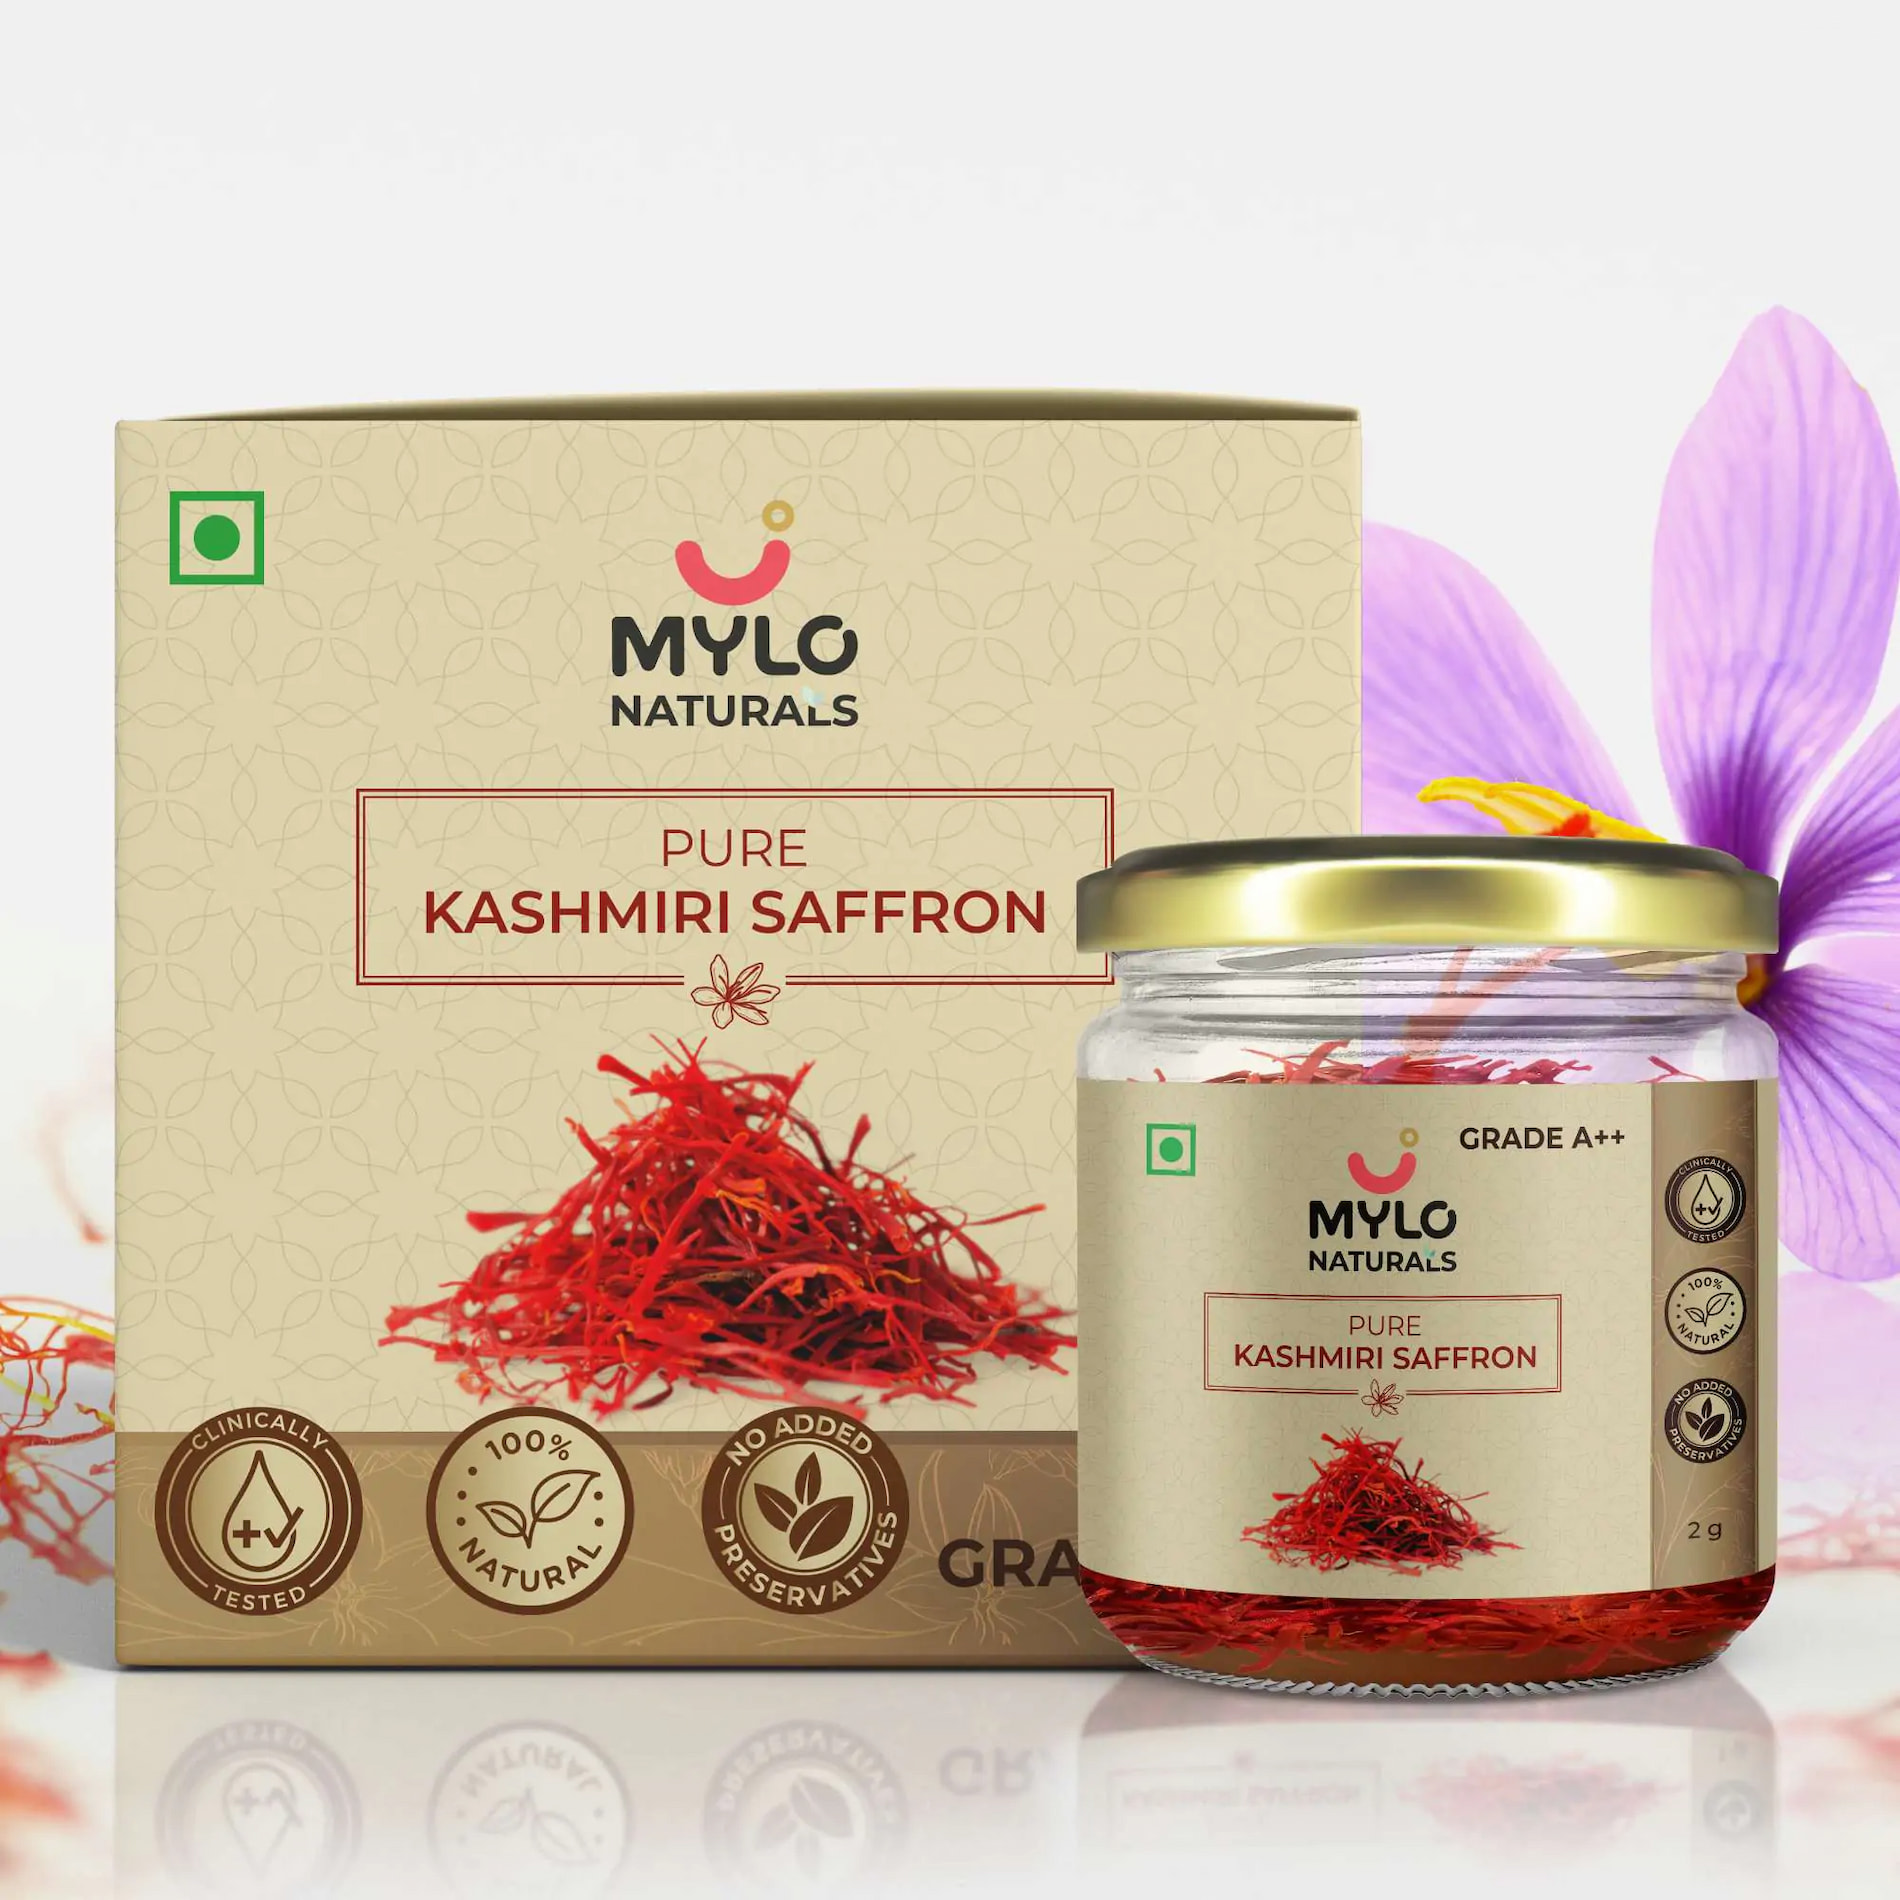 Mylo Naturals Pure Kashmiri Saffron 2g